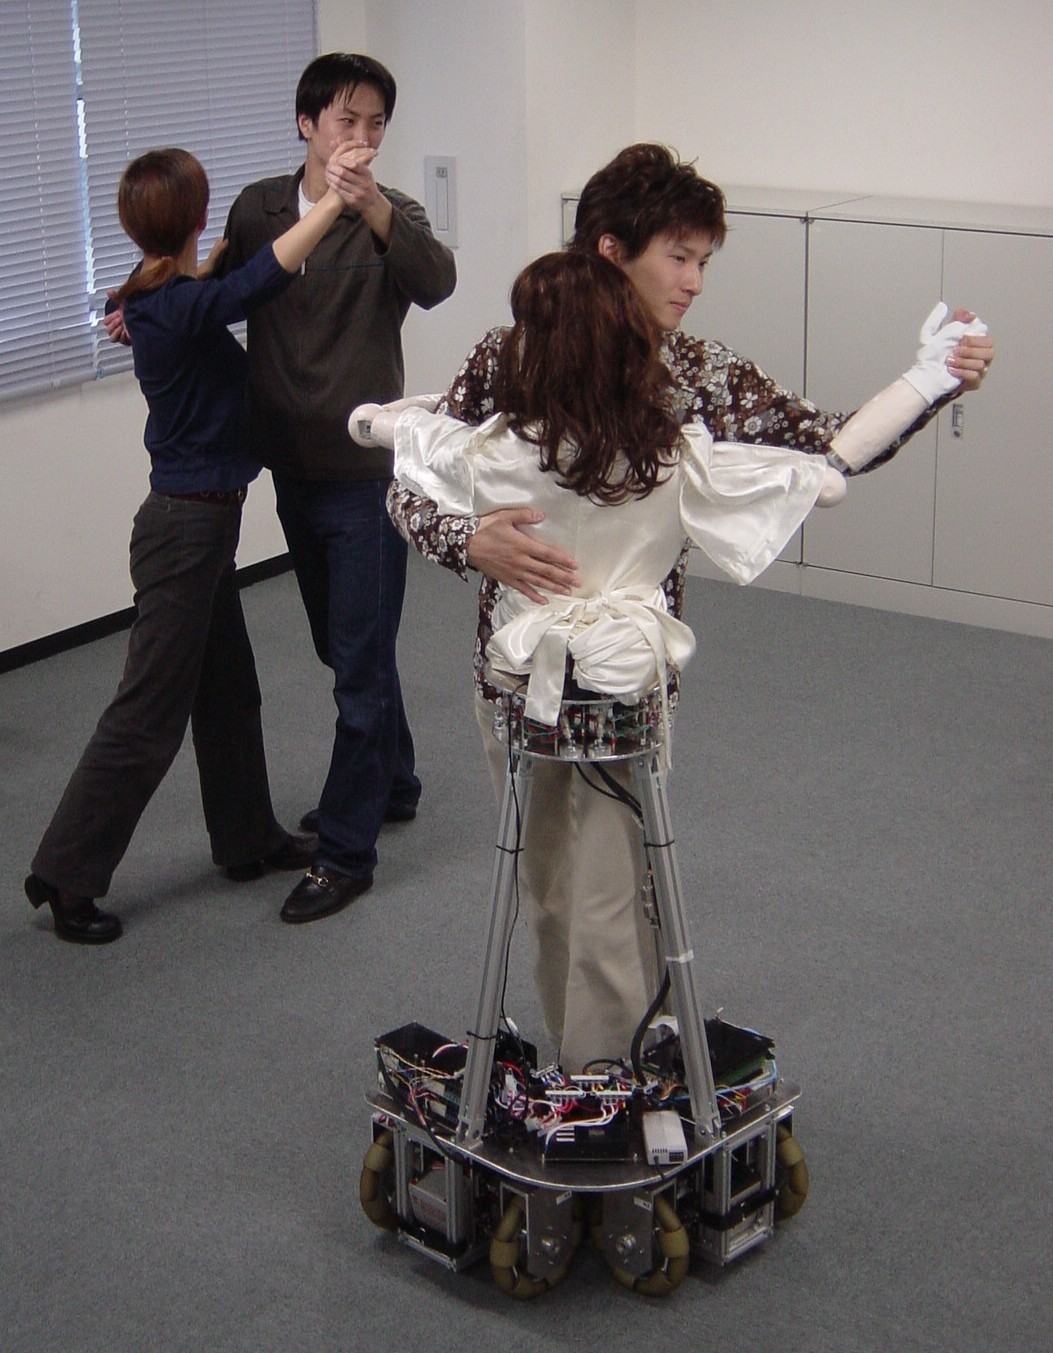 Obrázek roboticka ucitelka tance